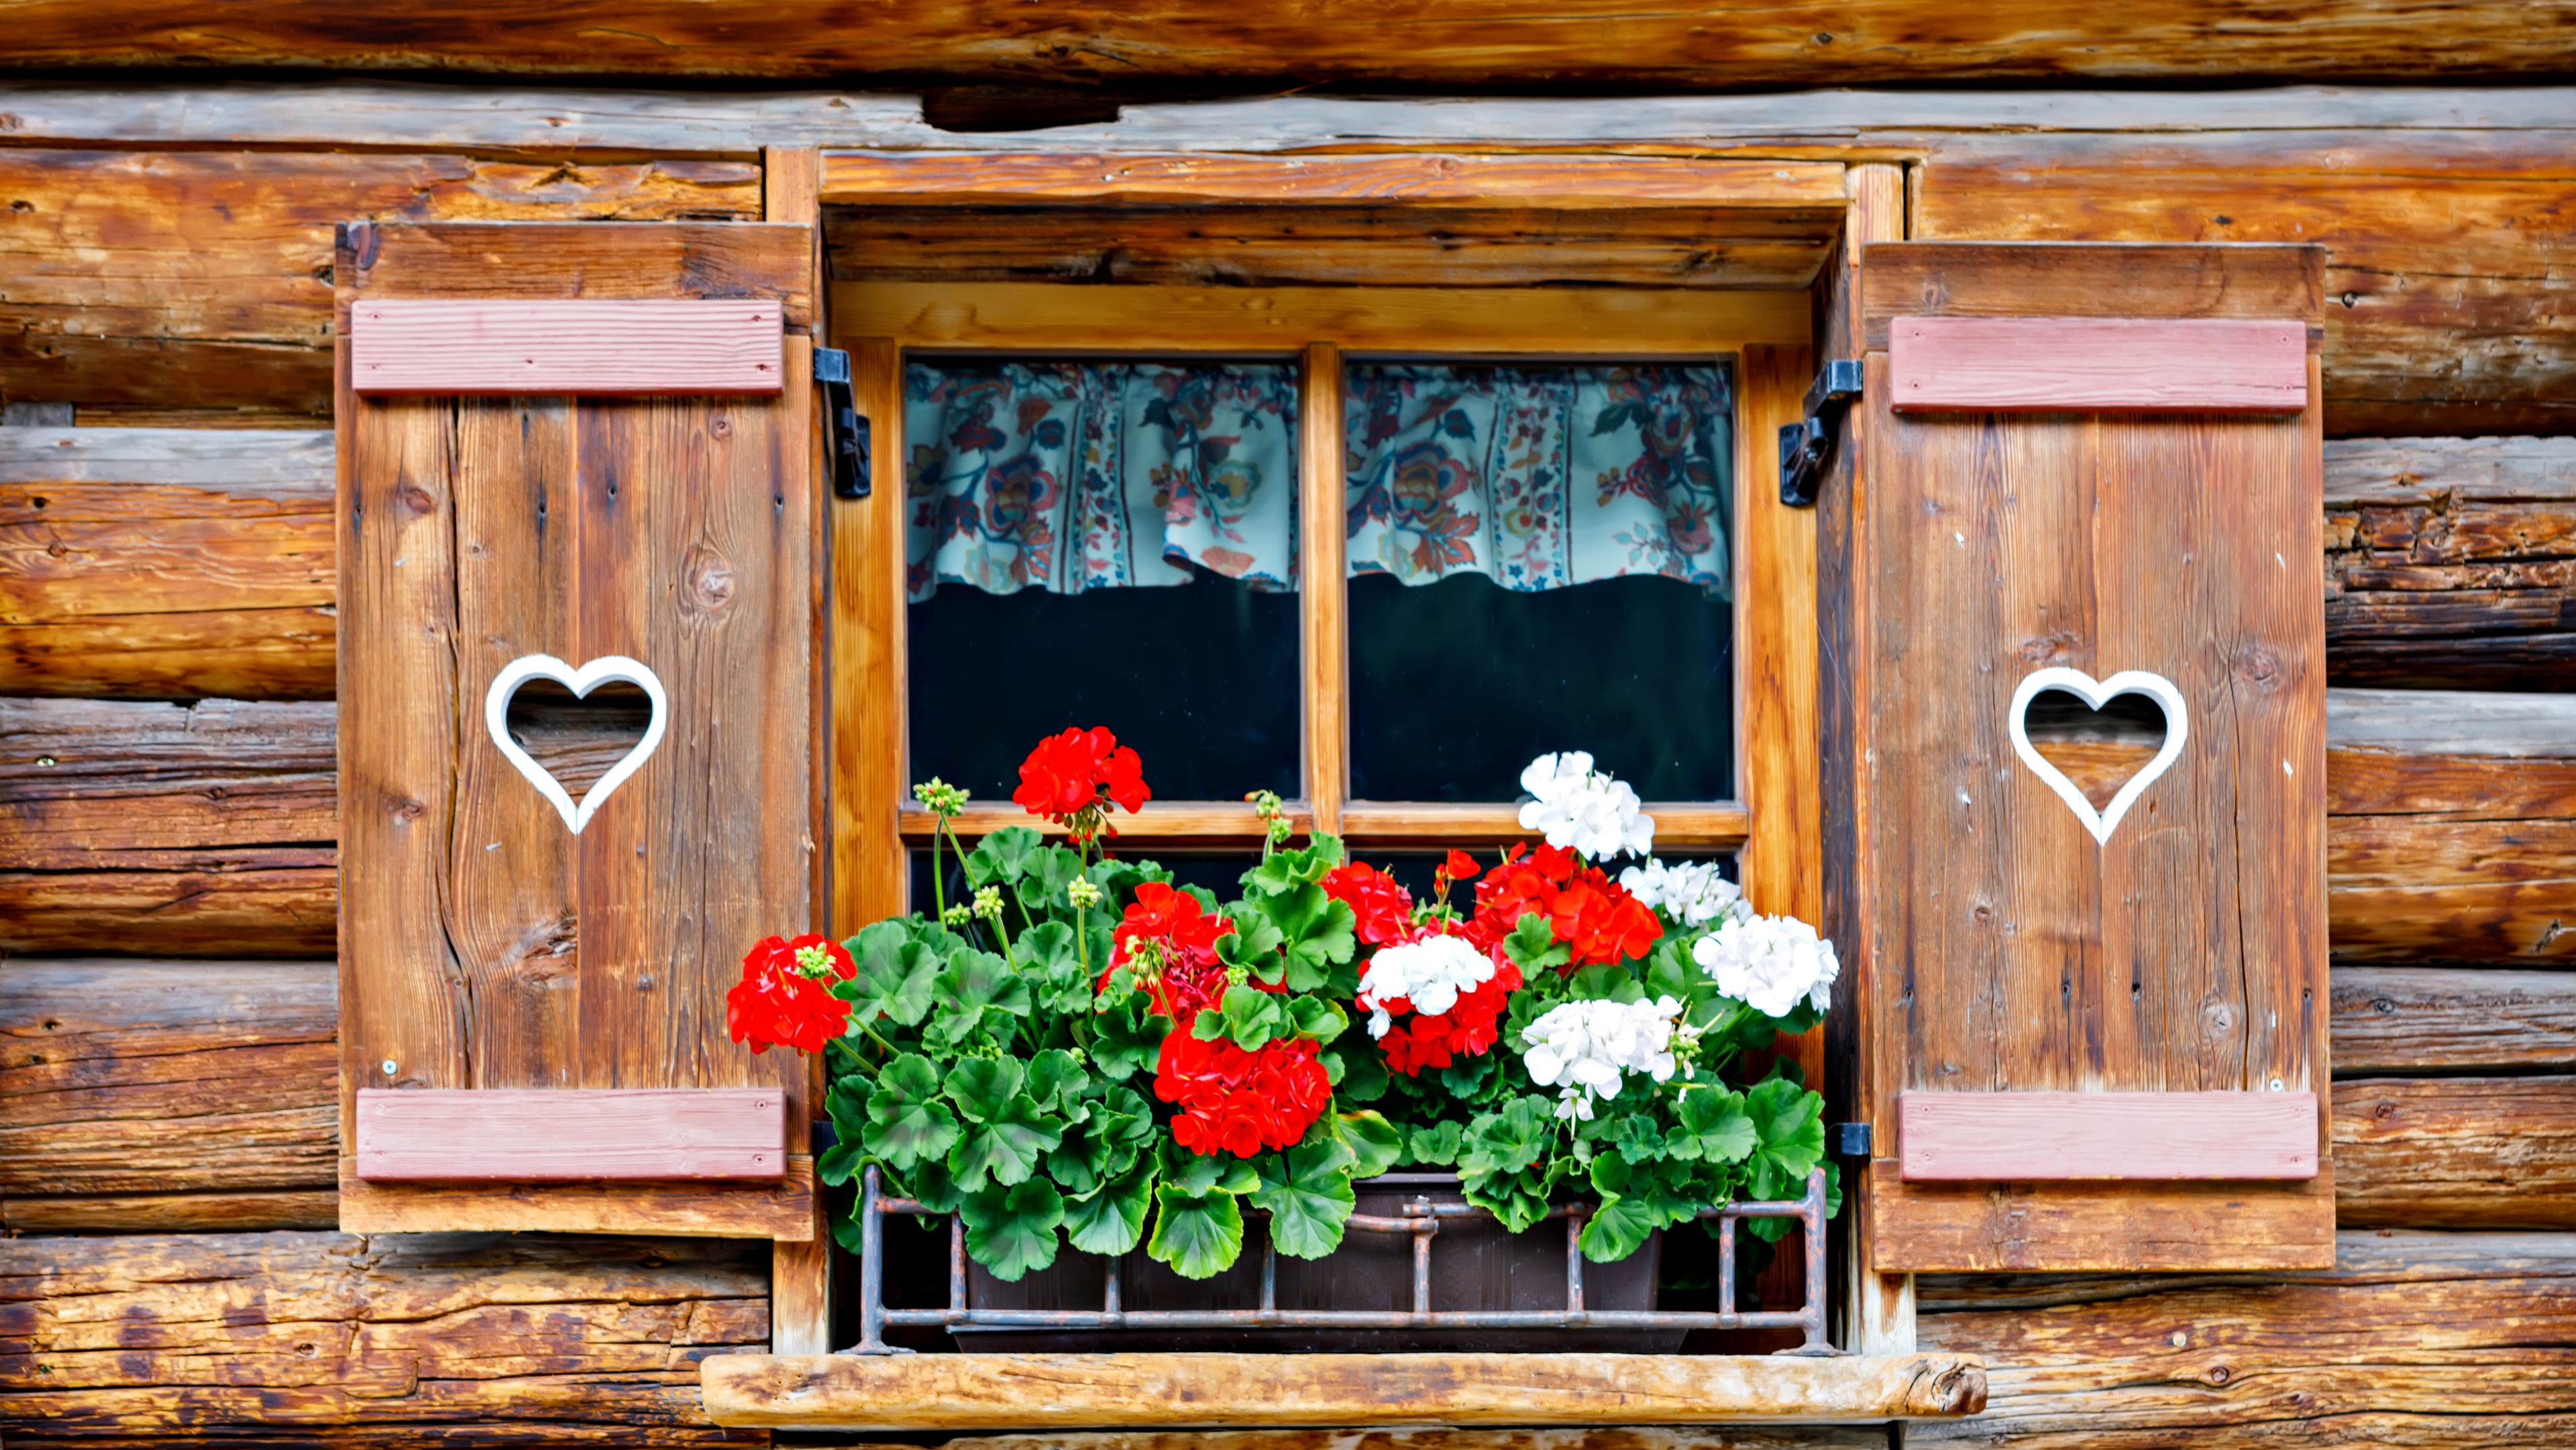  Typische bayerische Holzfenster mit roten Geranienblumen am Haus 